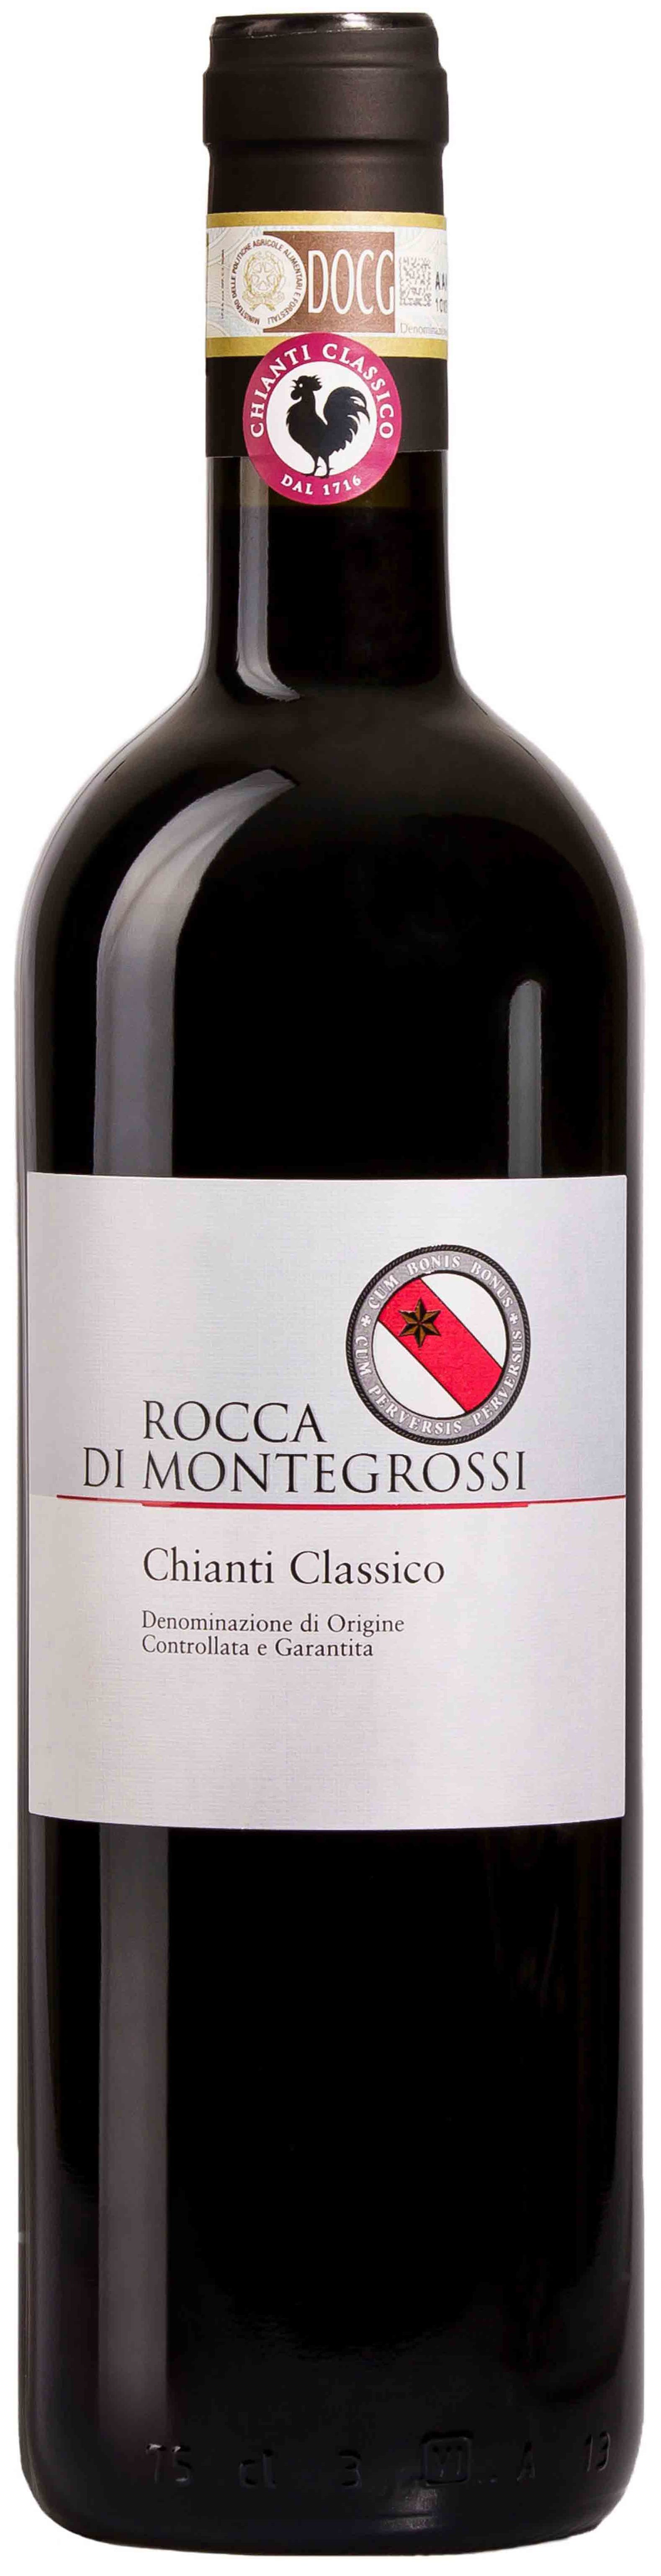 Rocca Di Montegrossi, Chianti Classico, 2006